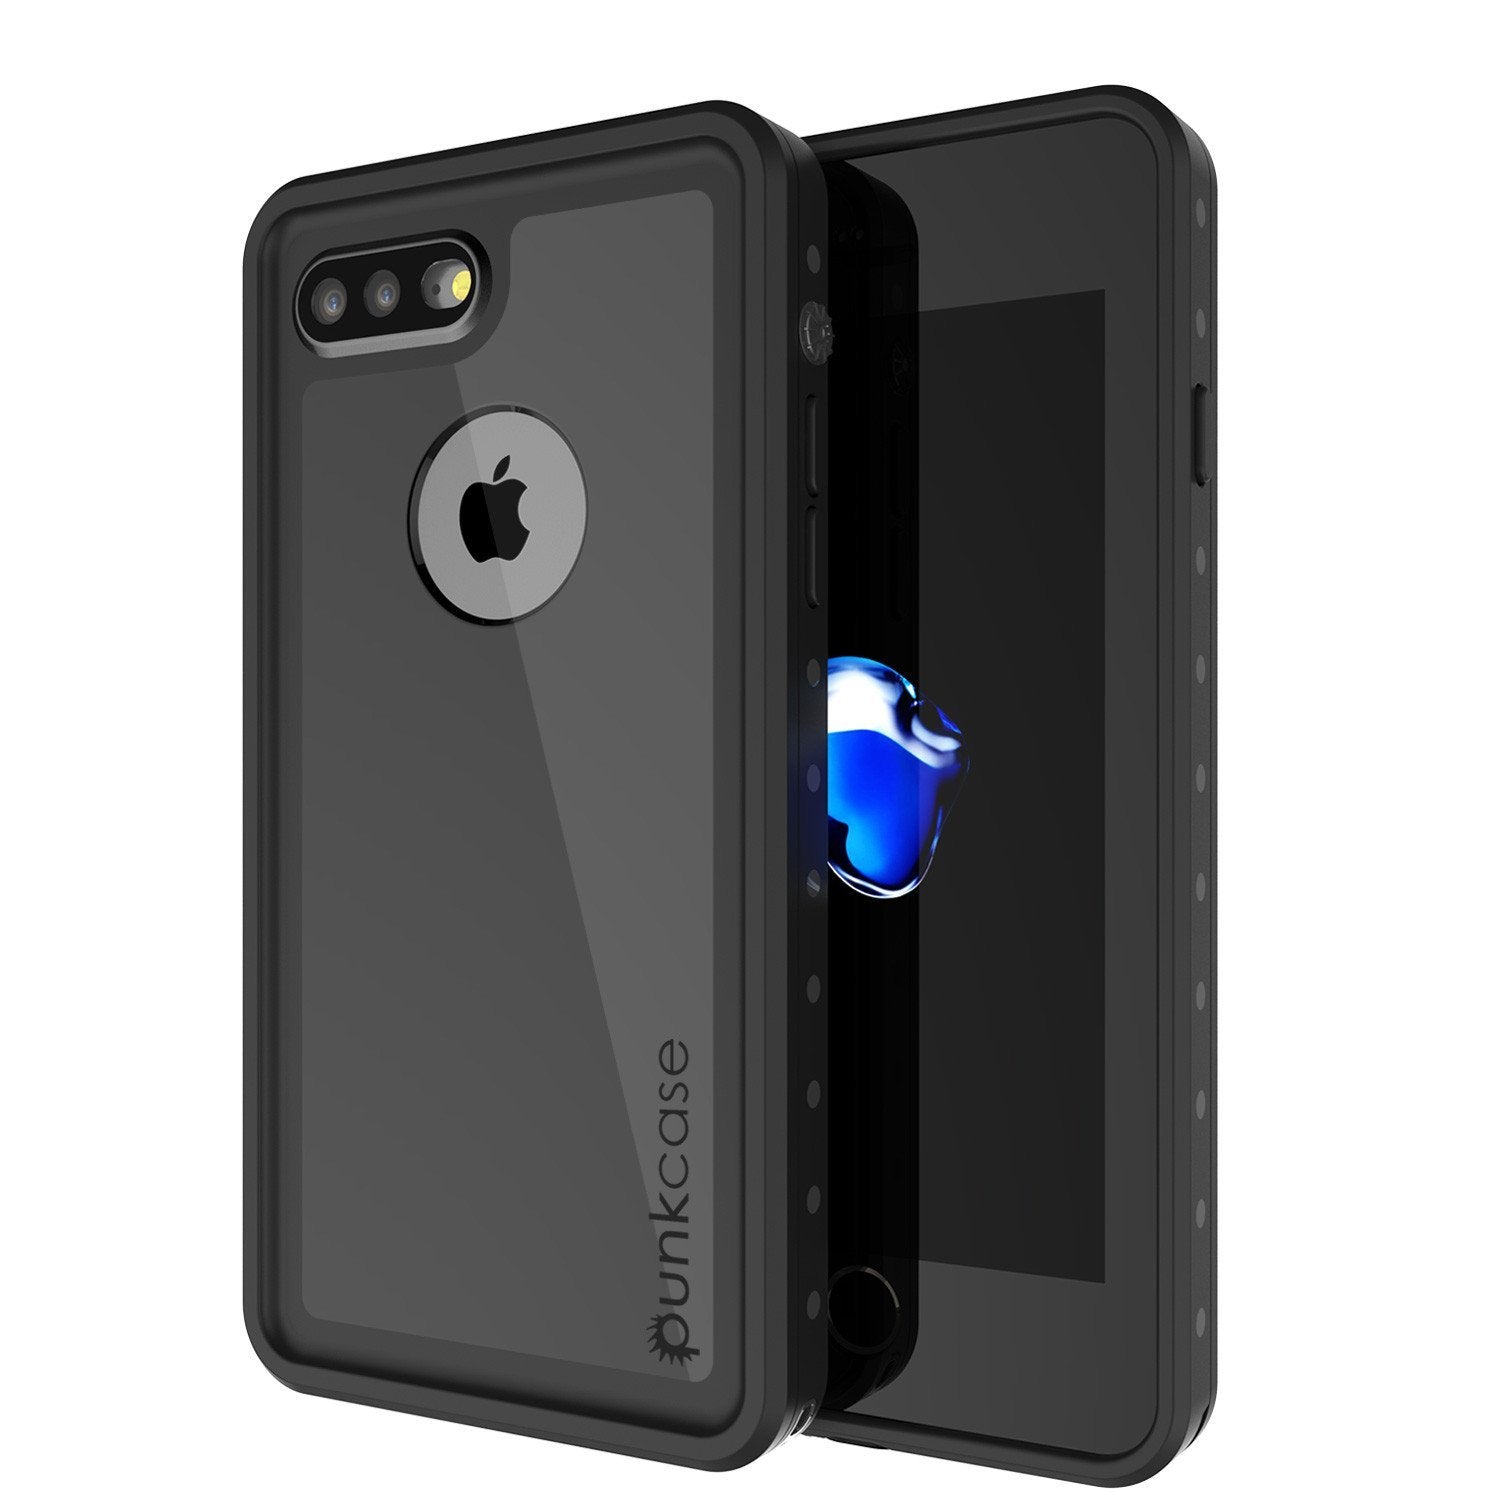 iPhone 8 Plus Waterproof IP68 Case, Punkcase [Black] [StudStar Series] [Slim Fit] [Dirtproof]